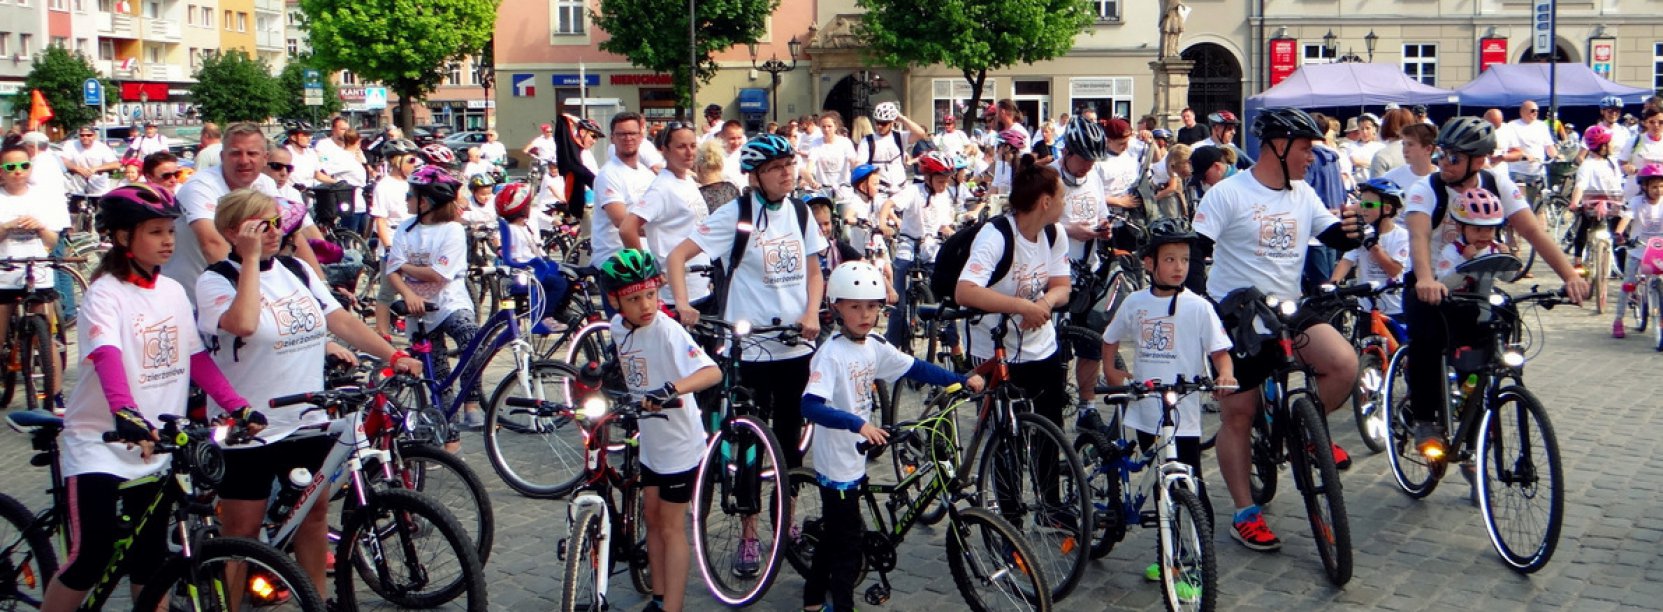 Duża grupa dorosłych i dzieci z rowerami na rynku